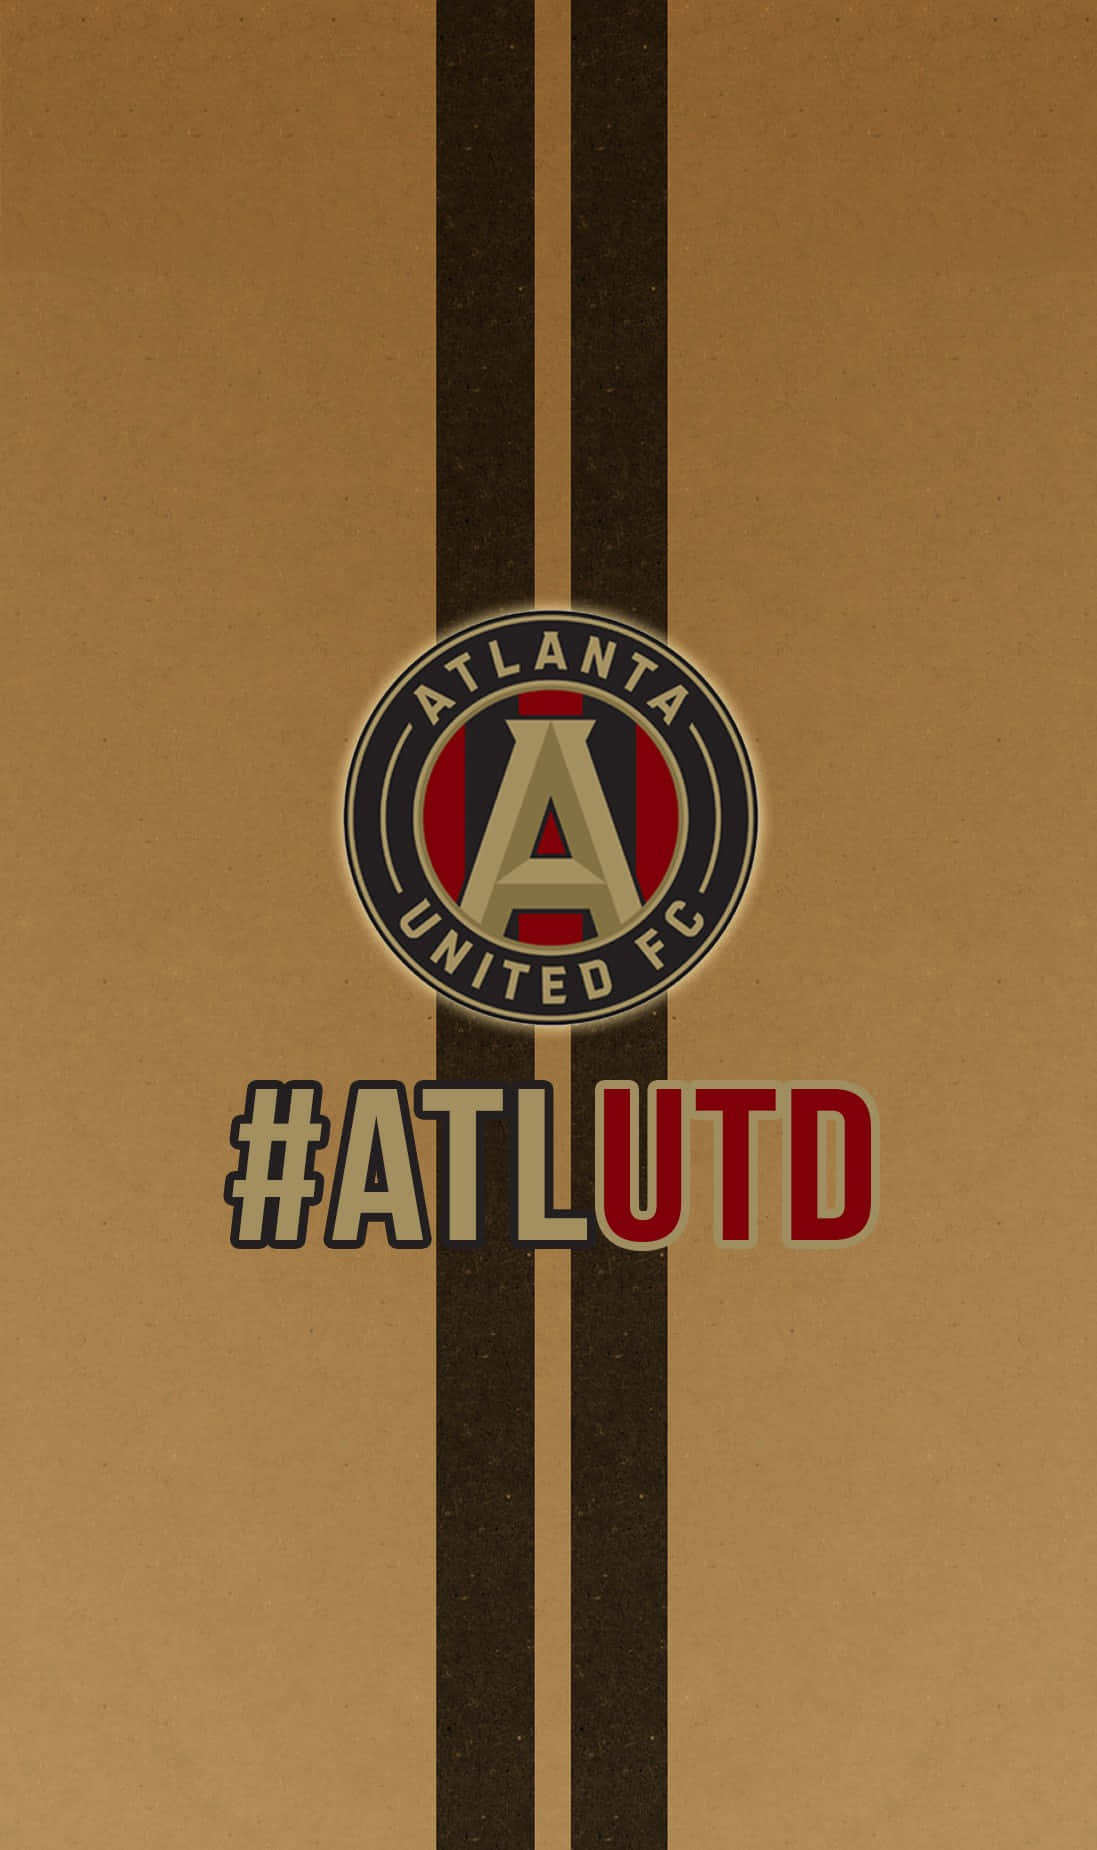 Atlantaunited Fc Atlutd Logo In Braun. Wallpaper